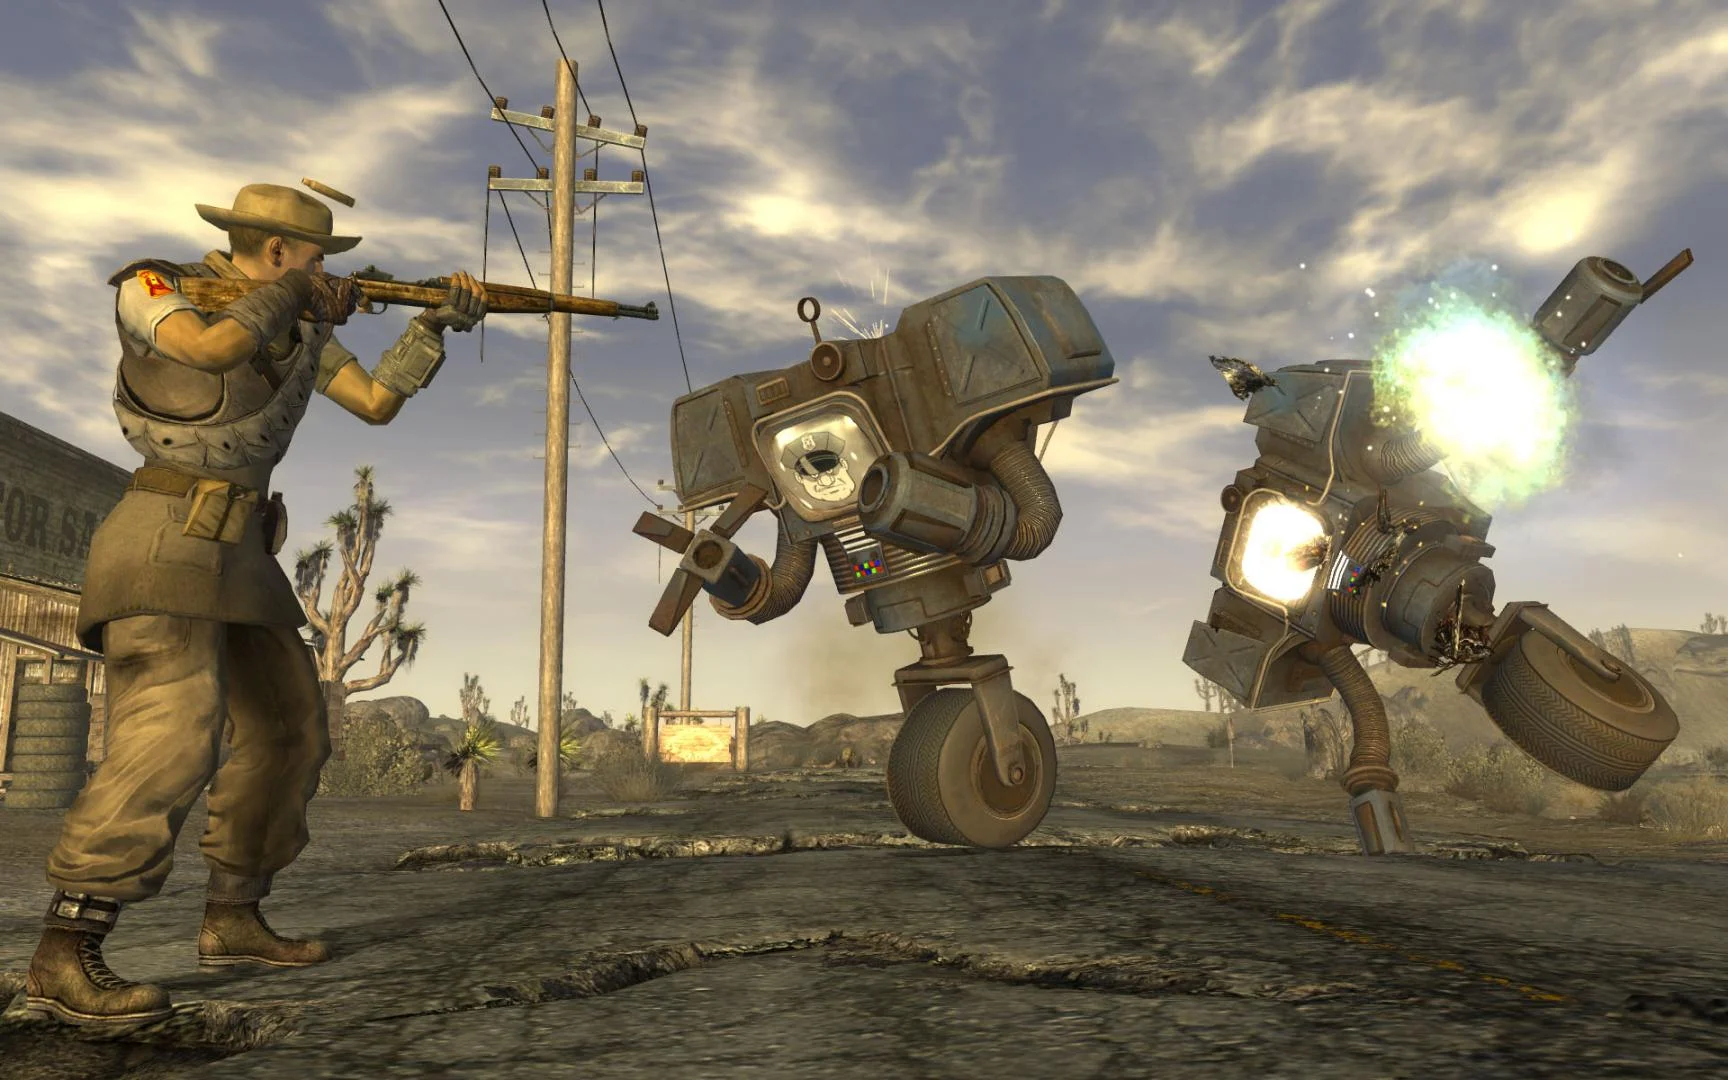 Обложка: скриншот из Fallout: New Vegas